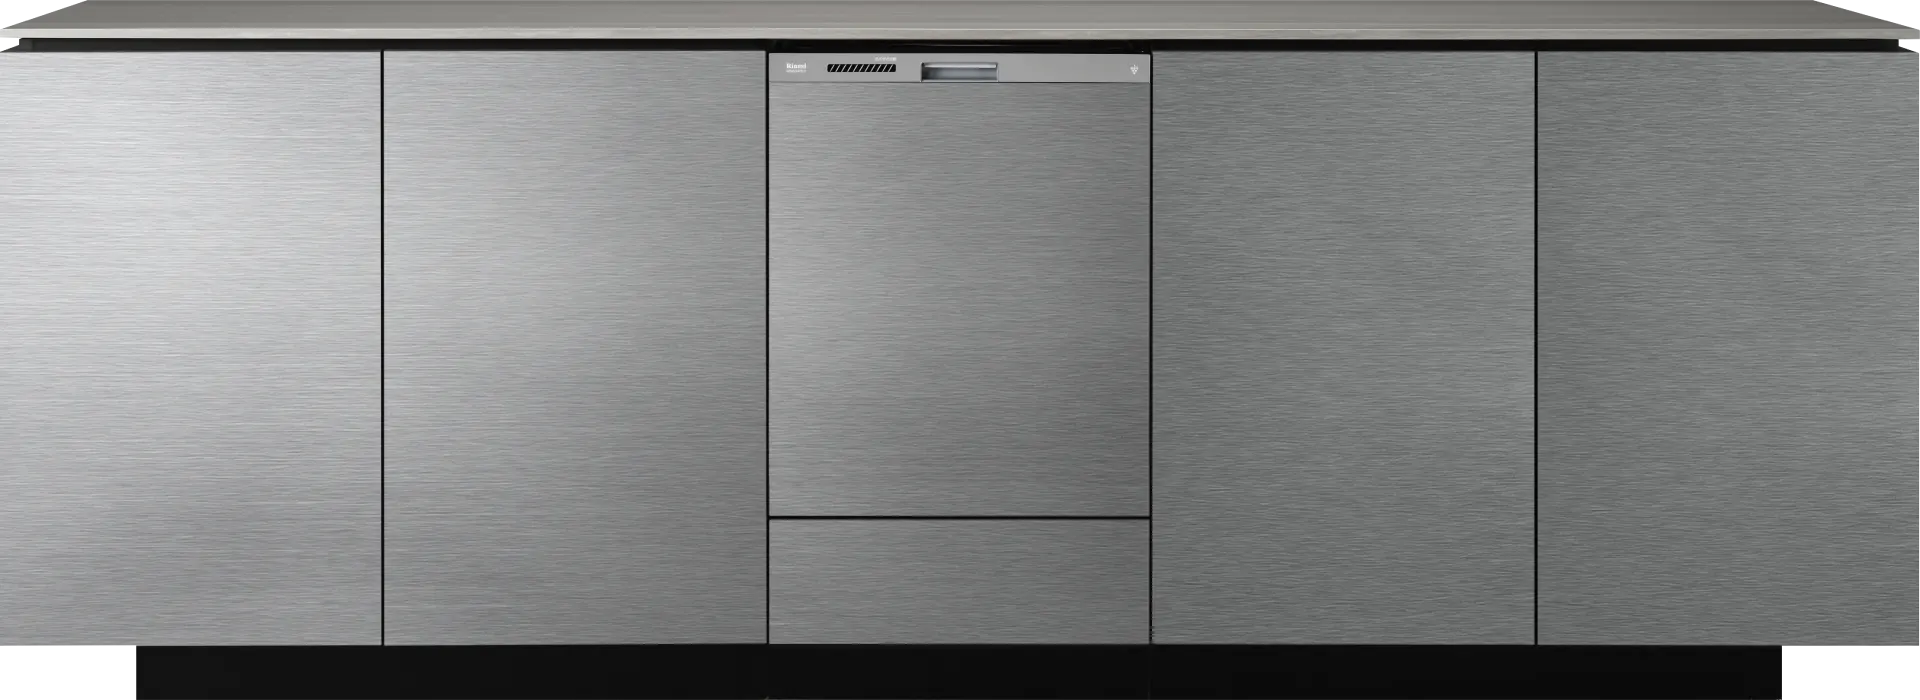 新築向け・深型タイプのスライドオープン食洗機 - Rinnai Dishwasher